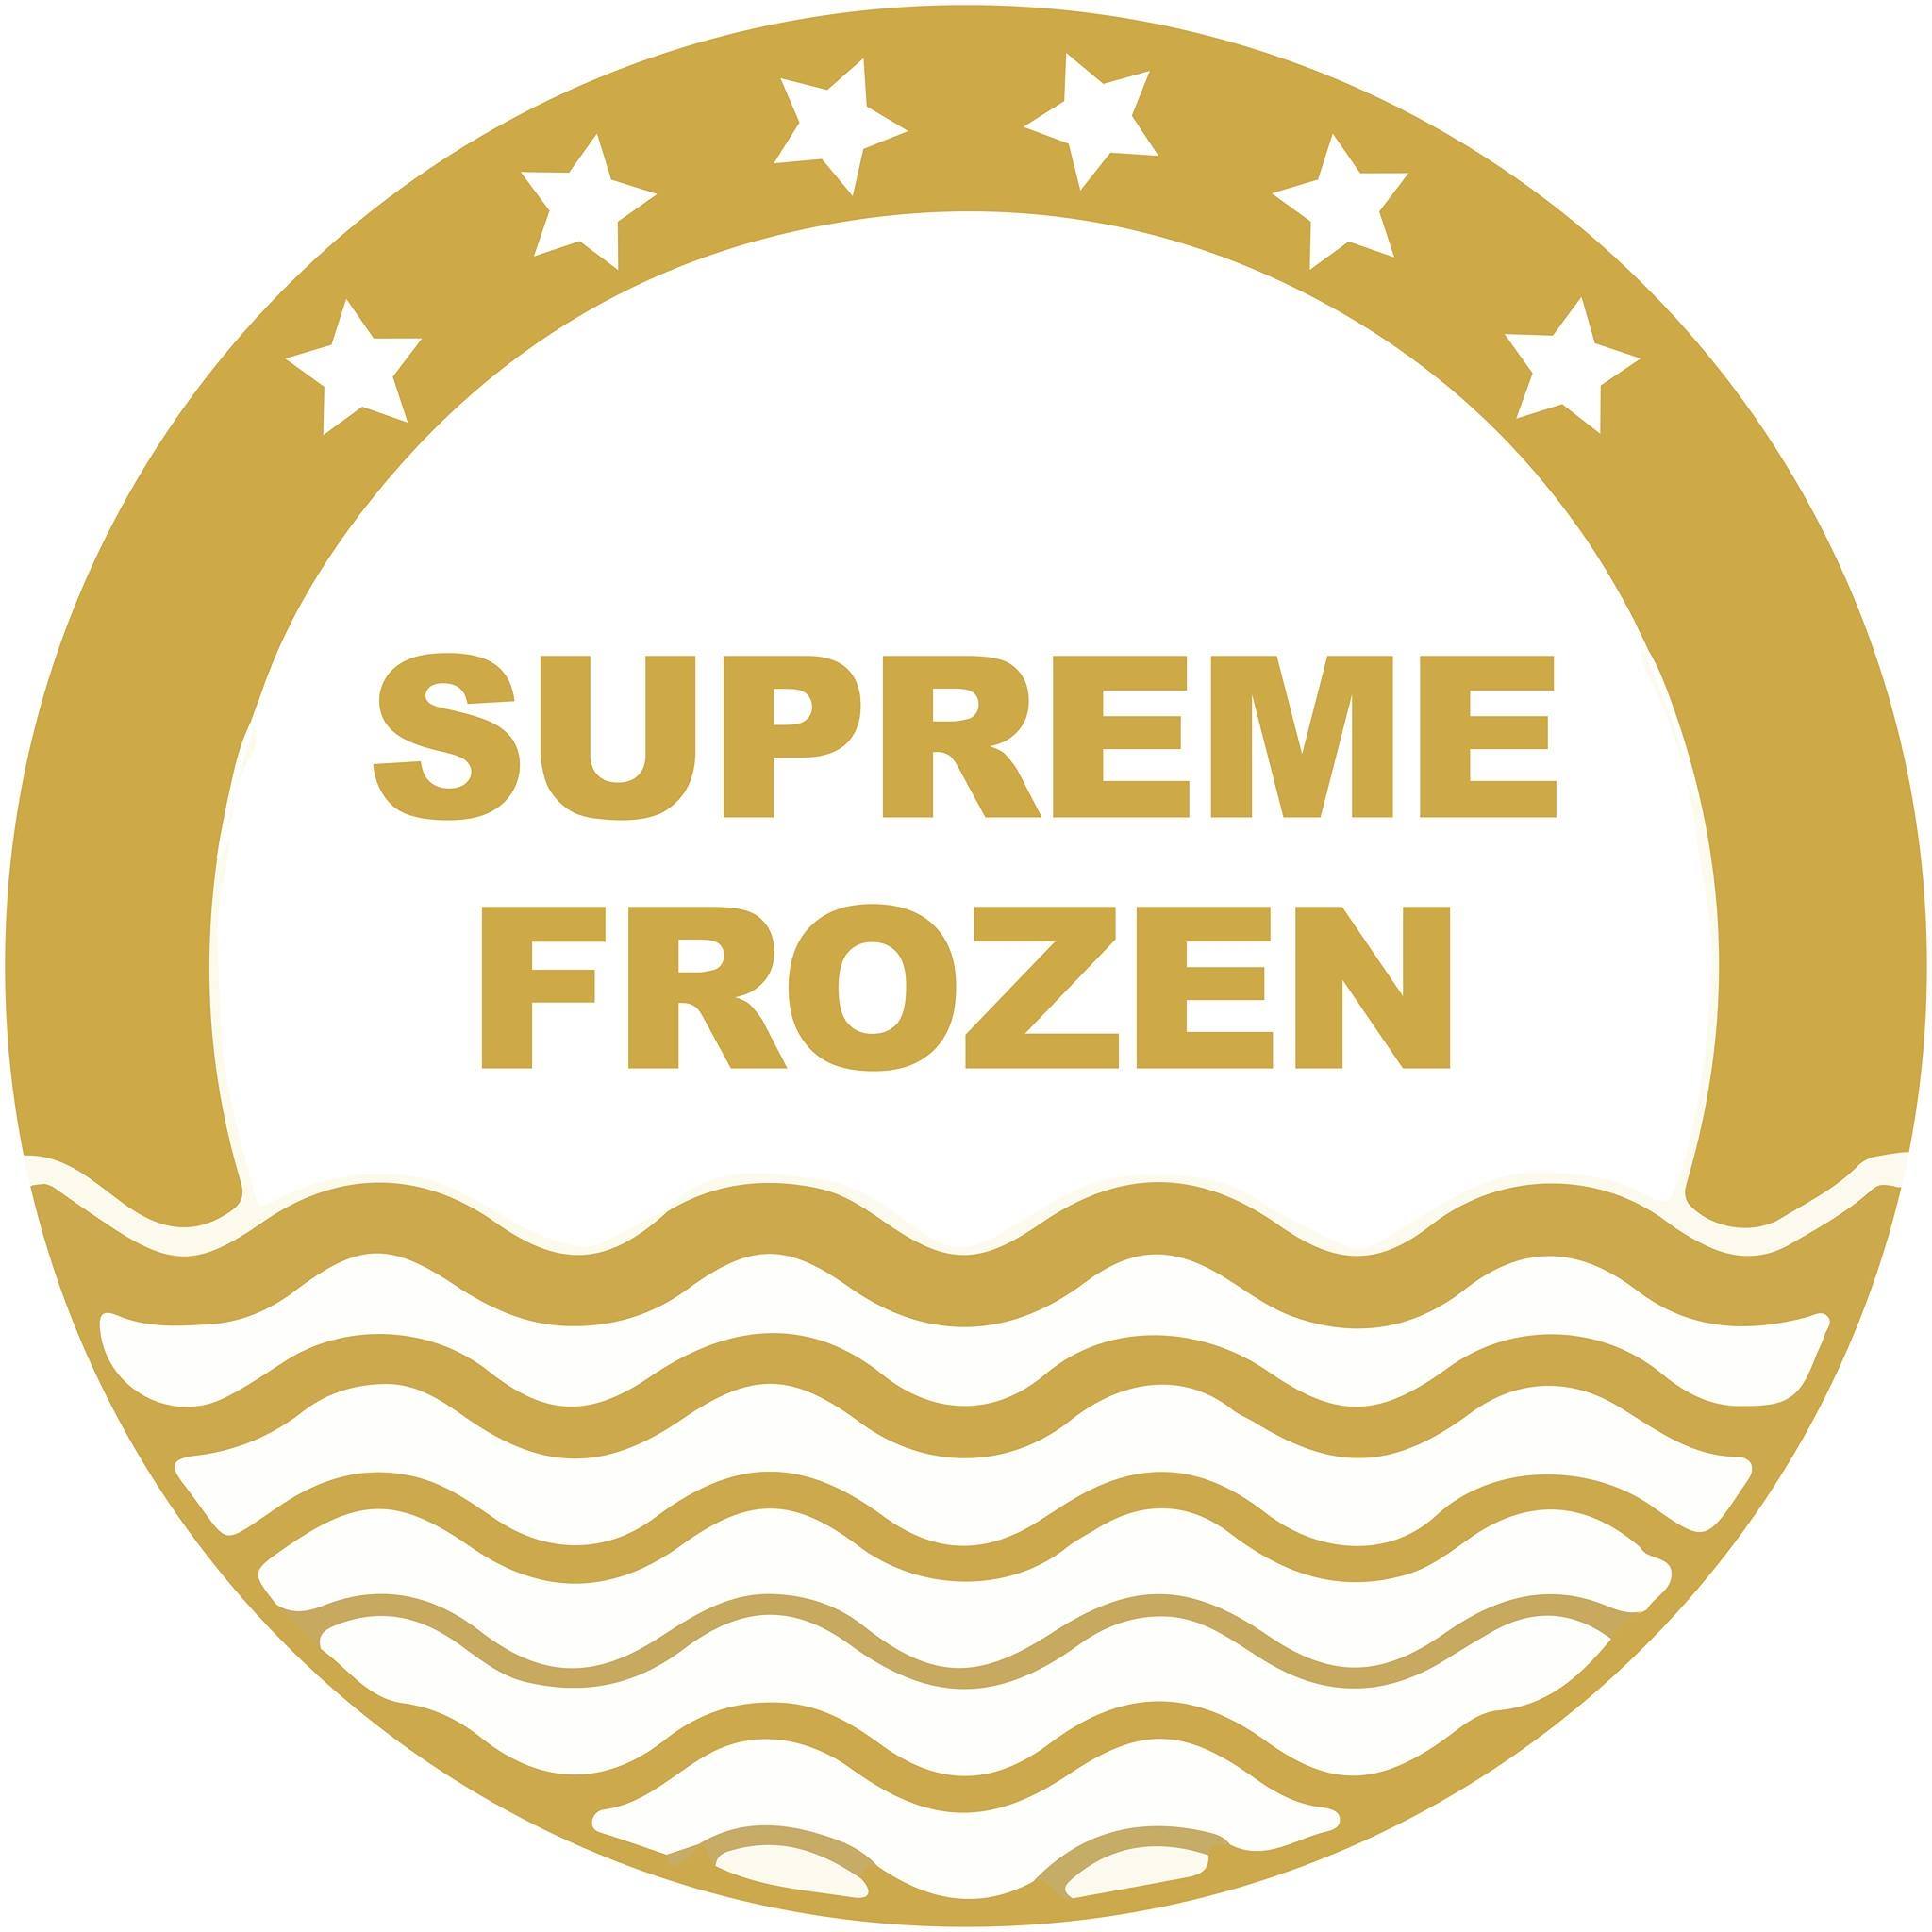 Surpeme Frozen